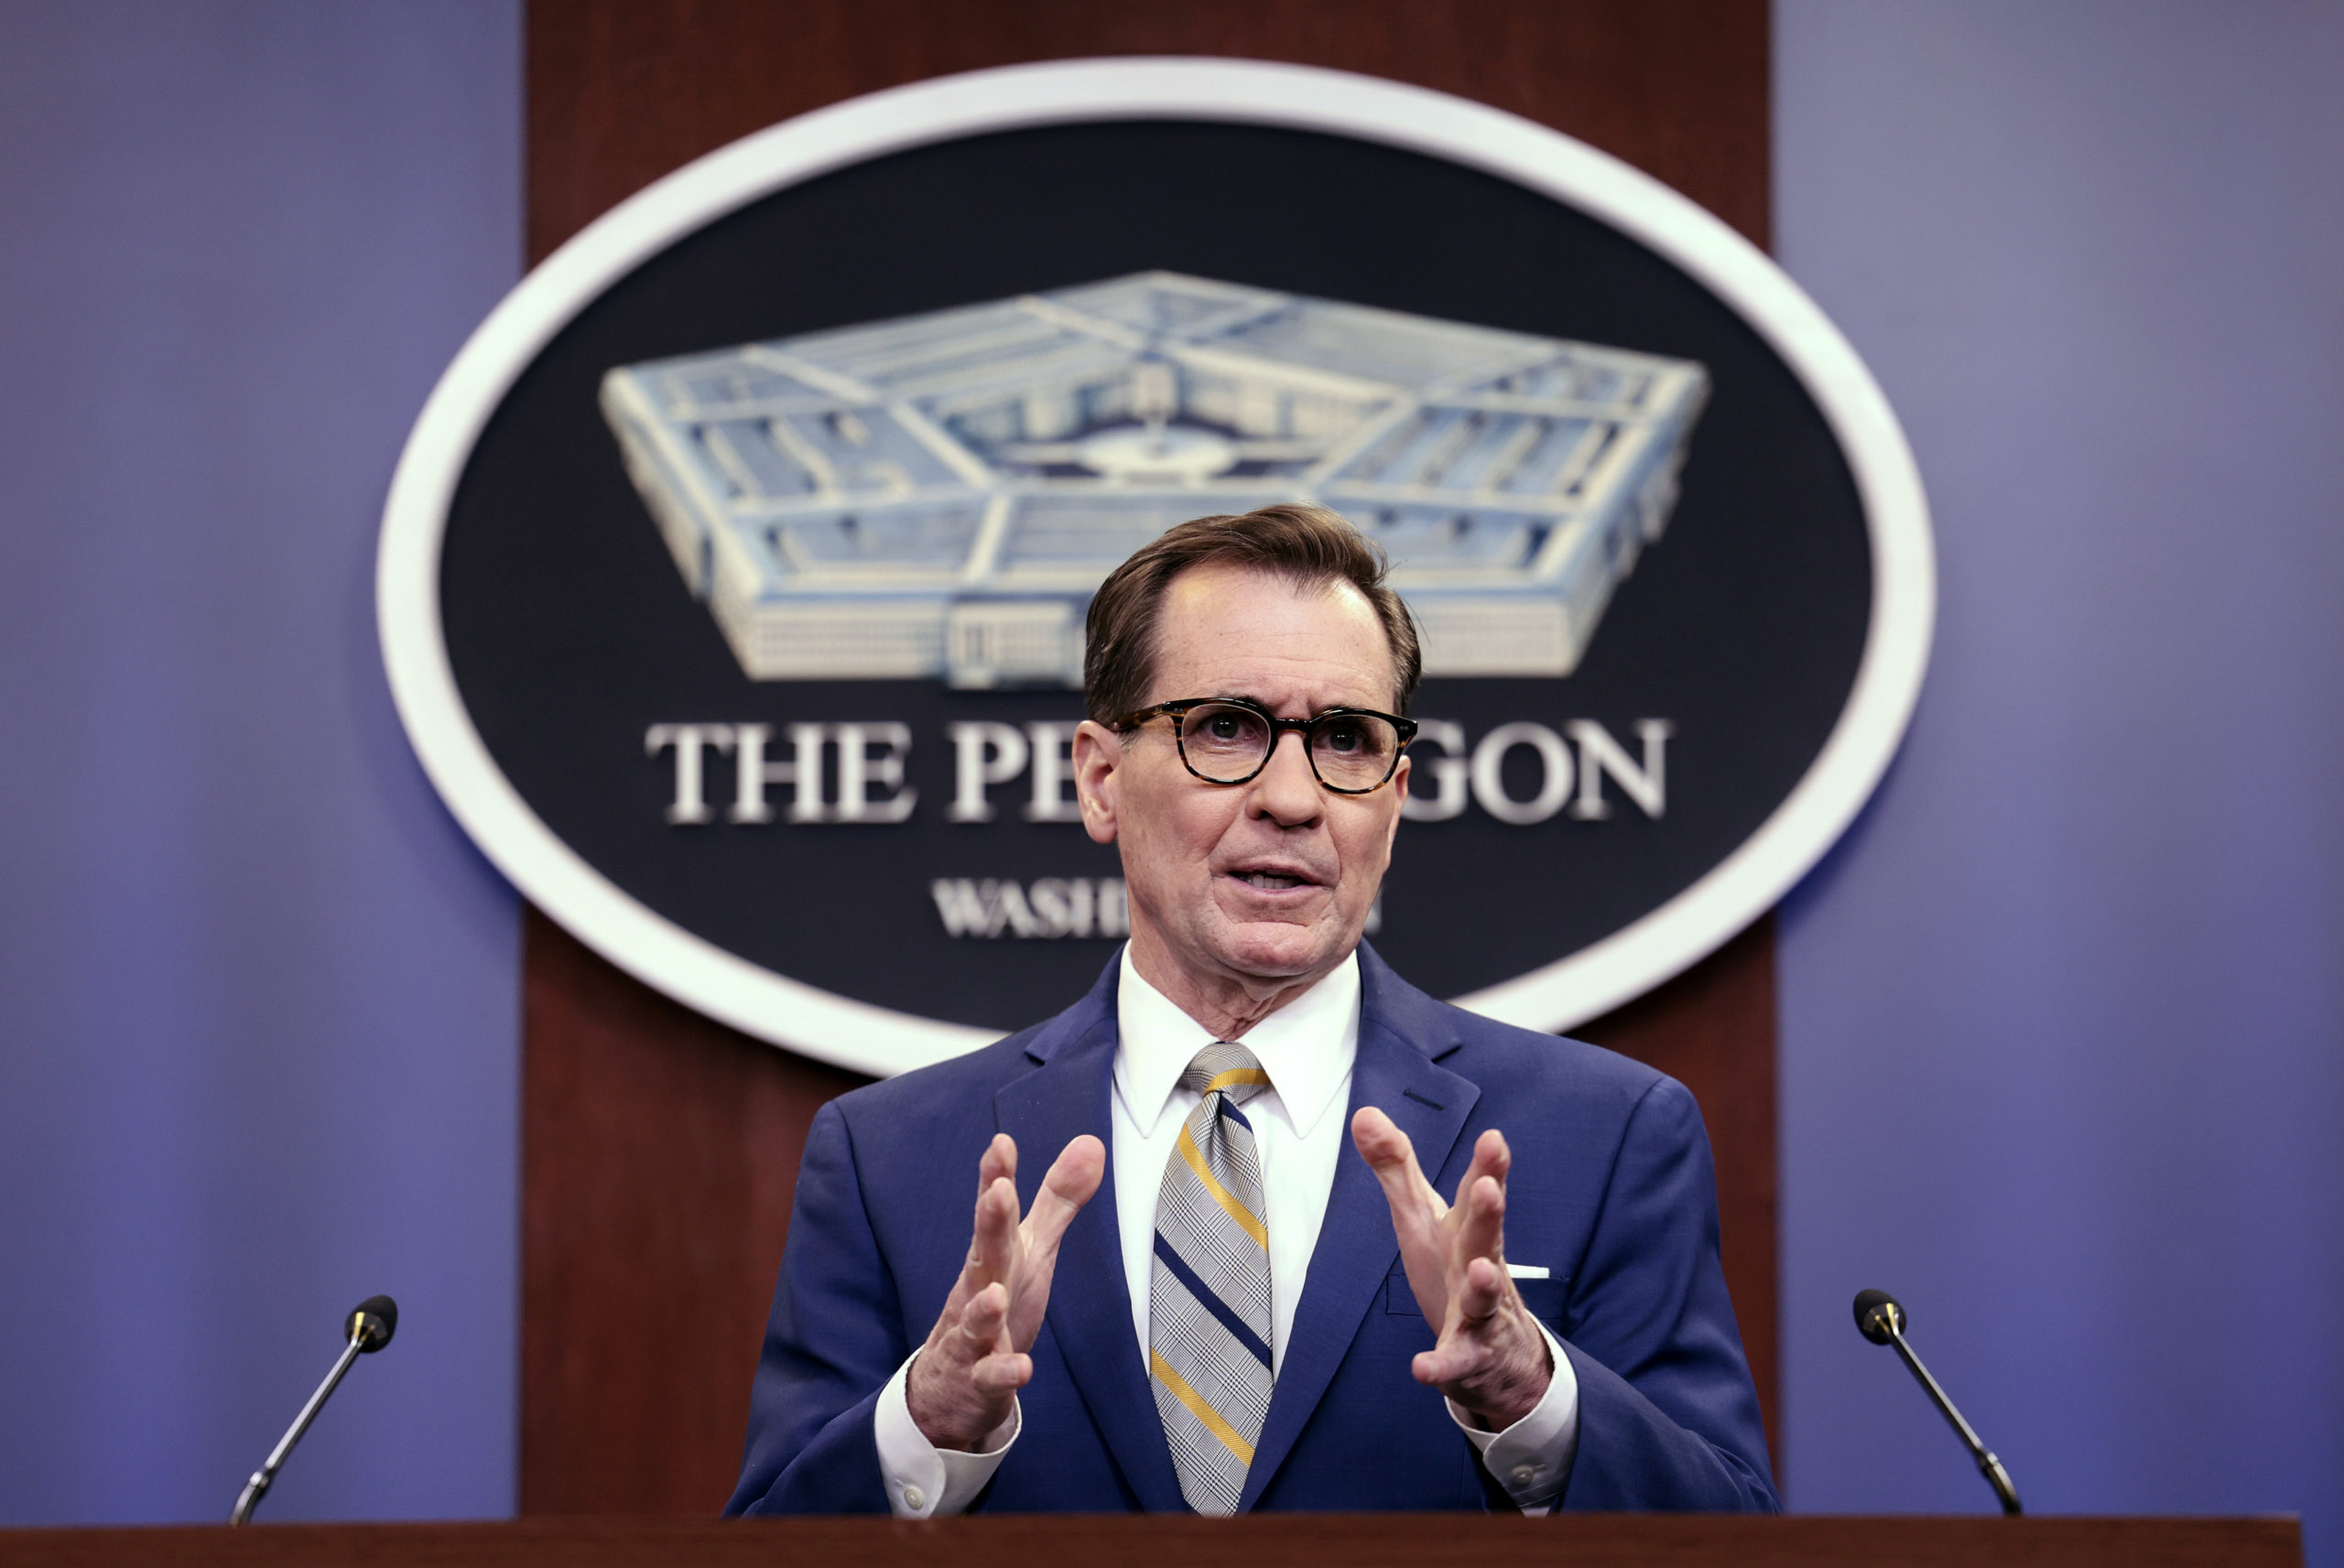 Pentagon Press Secretary Kirby Briefs the Media